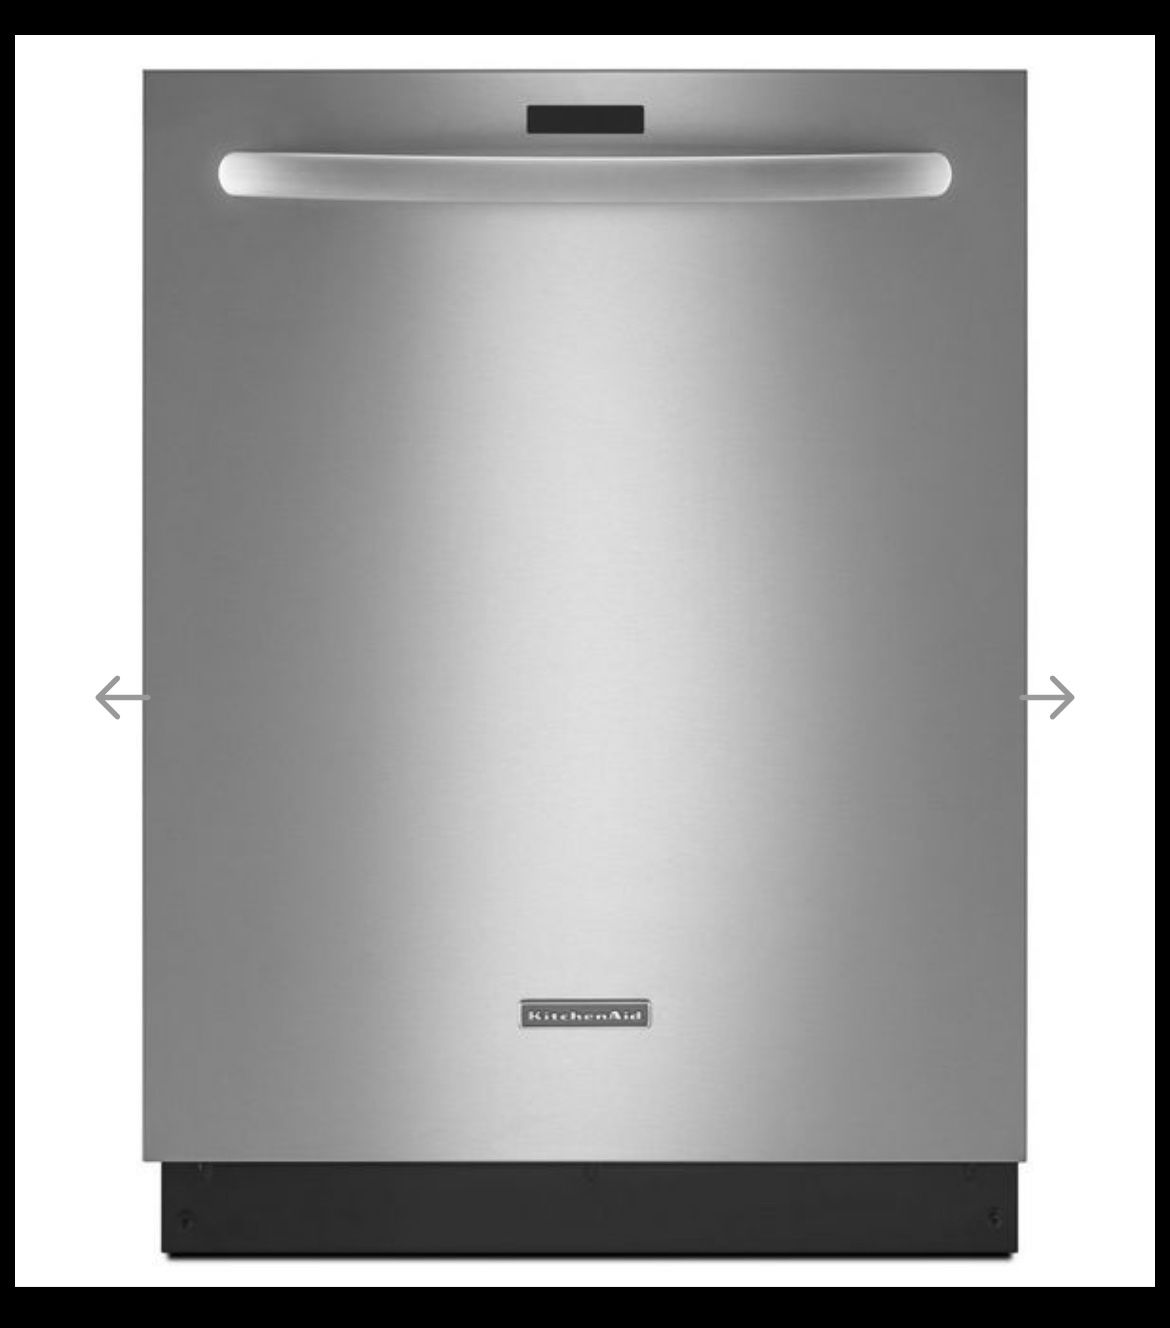 24” KitchenAid Dishwasher - KDTM354DSS